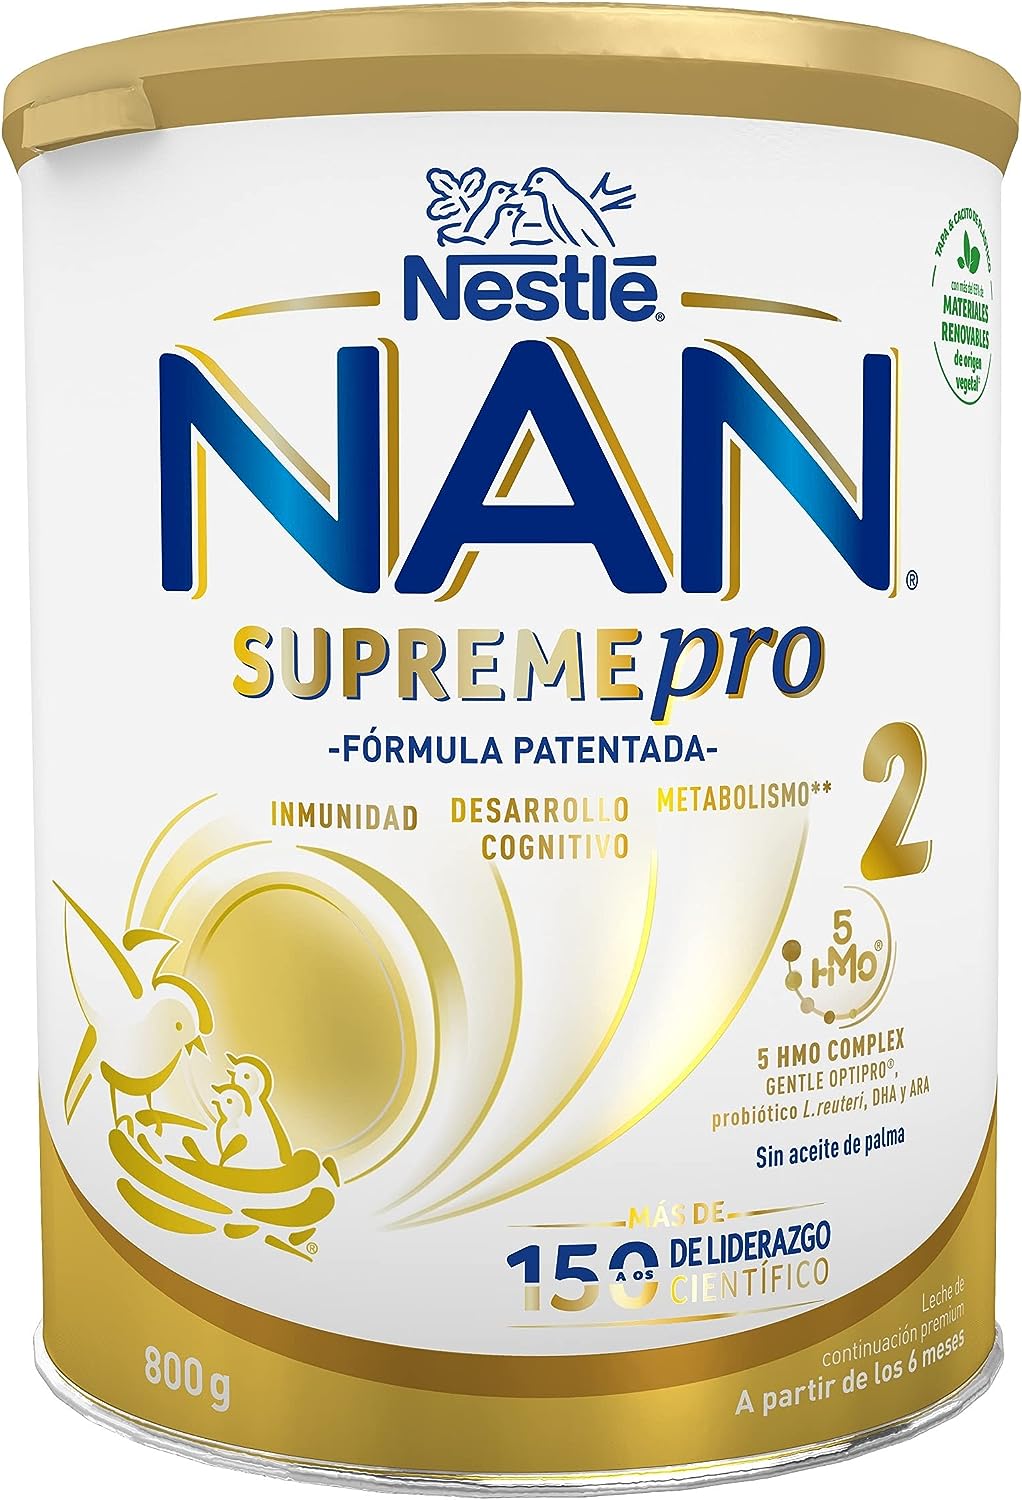 NAN Supreme pro 2